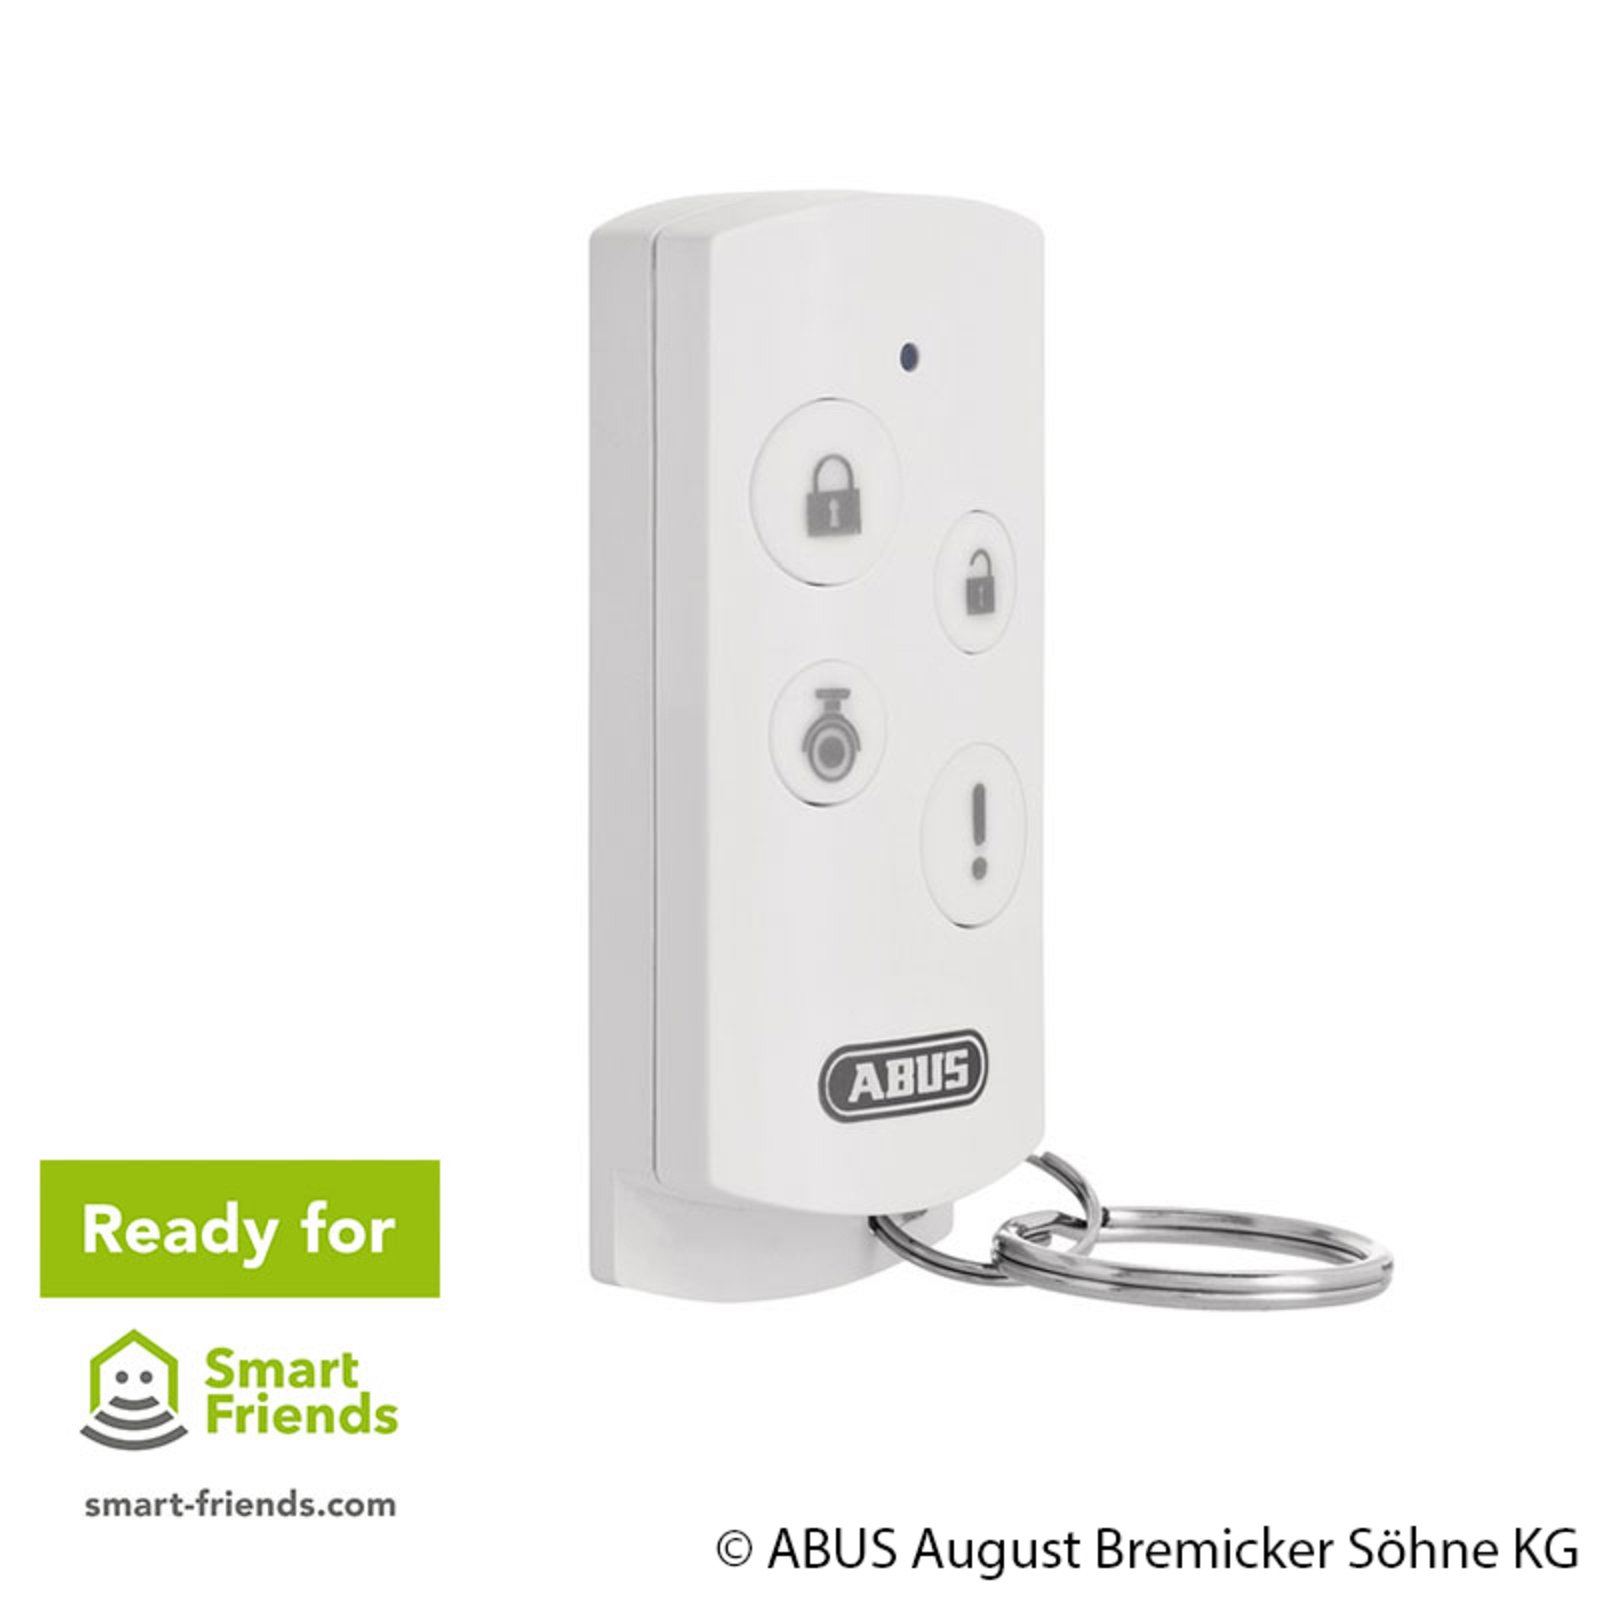 ABUS Smartvest trådløs fjernbetjening